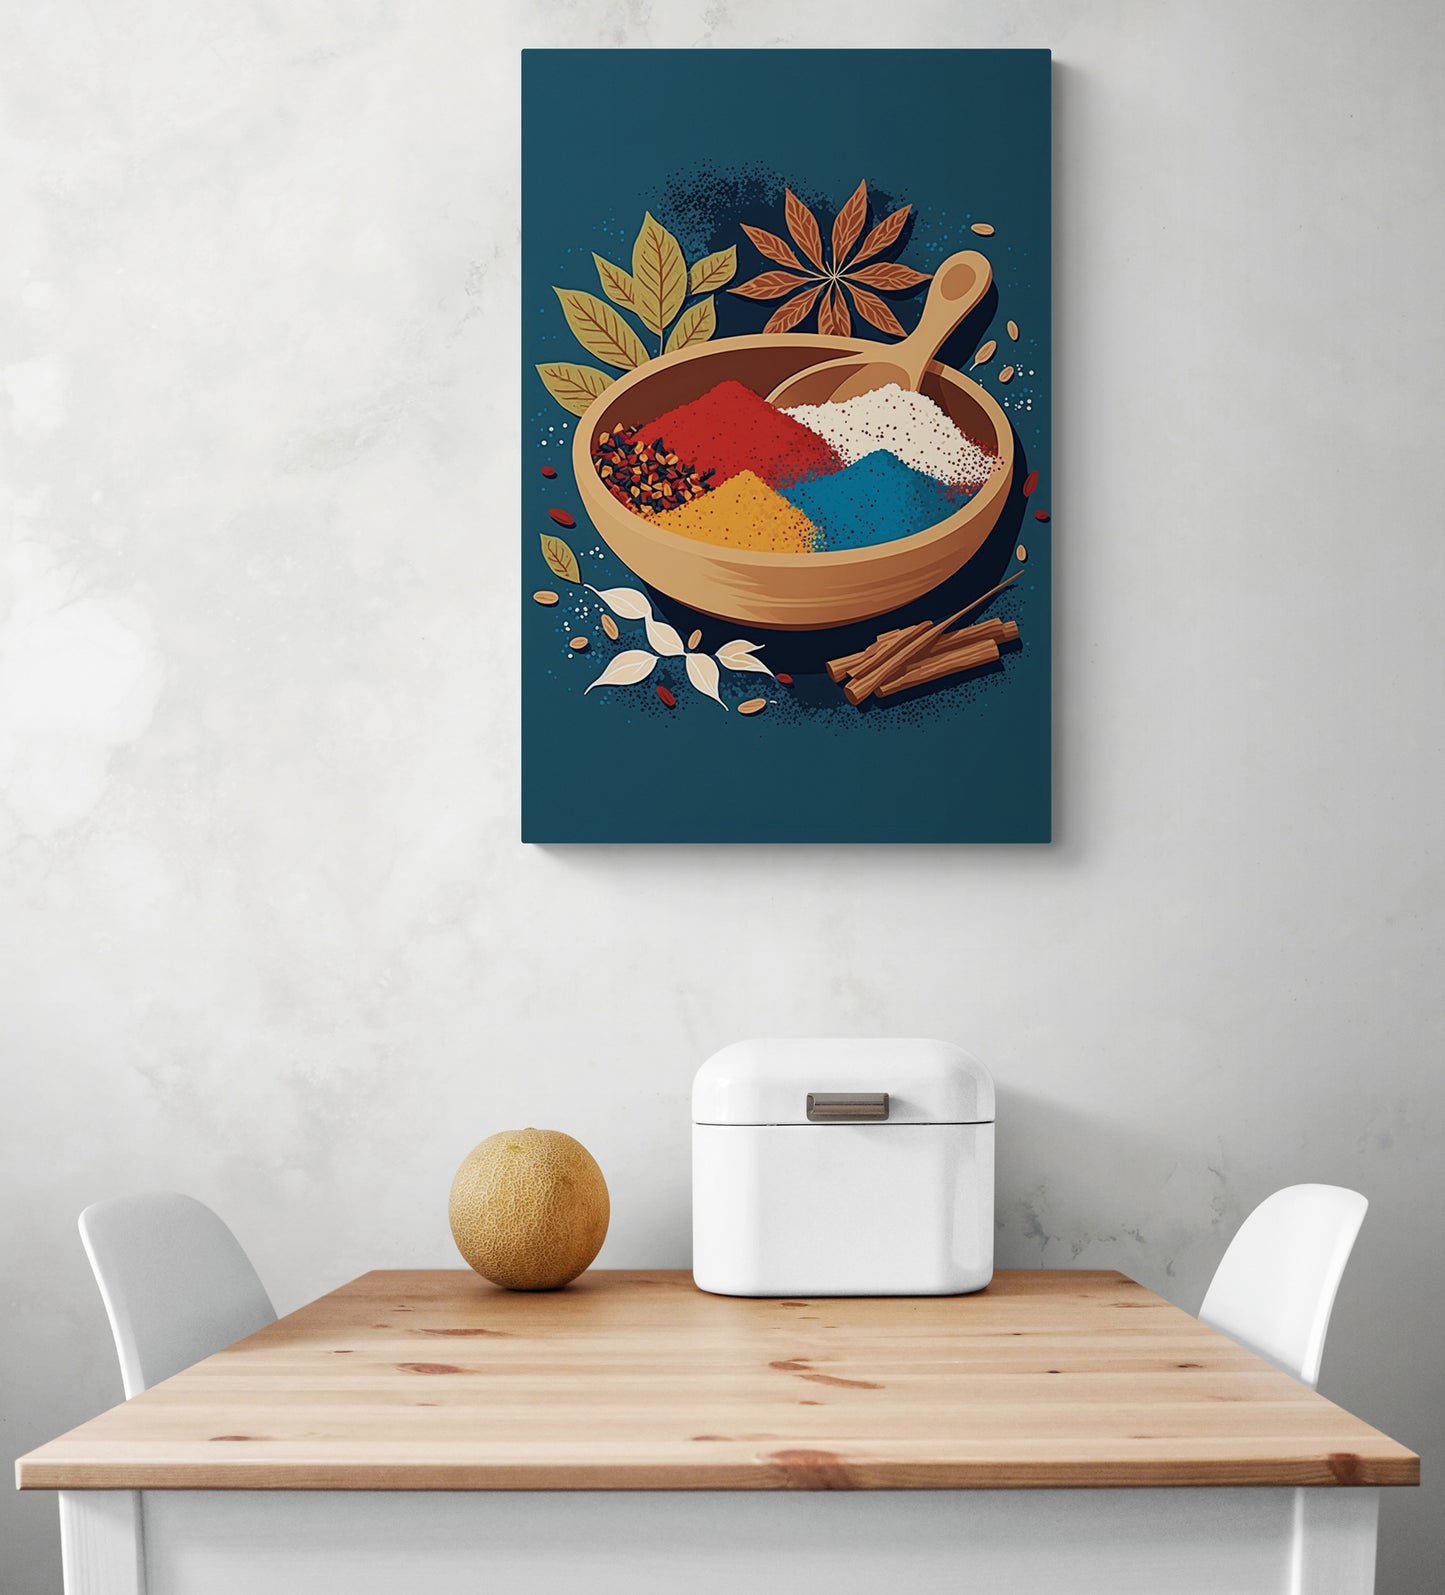 tableau bleu moderne avec une illustration d'un bol rempli d'épices est accroché audessus d'une table en bois